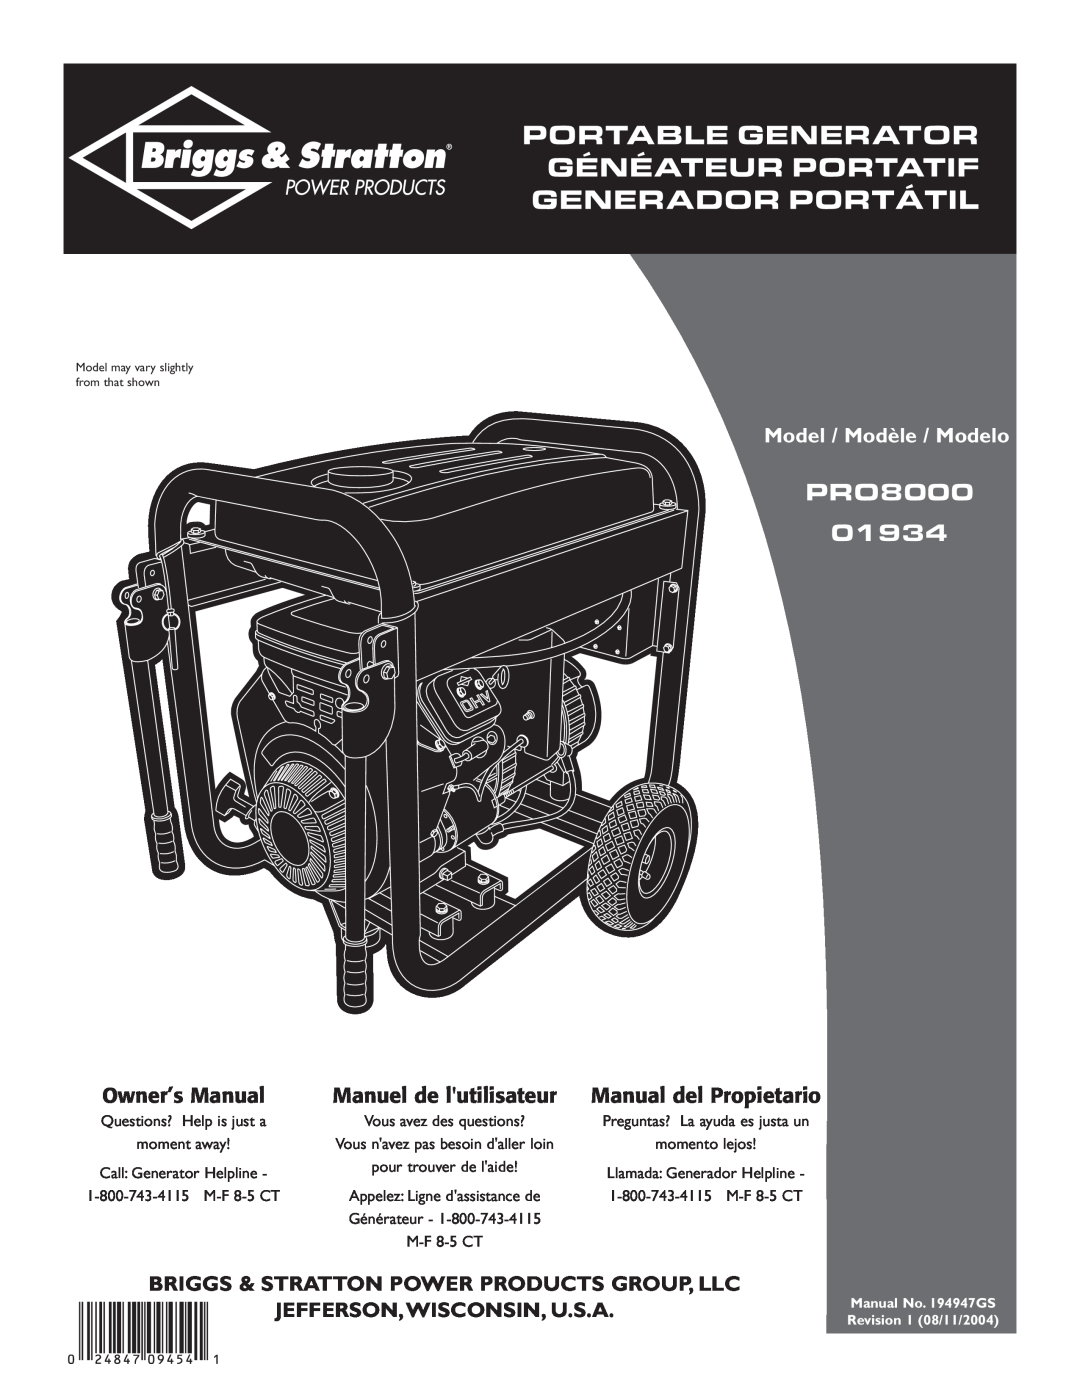 Briggs & Stratton PRO8000 owner manual Manuel de lutilisateur, Manual del Propietario, Jefferson,Wisconsin, U.S.A 